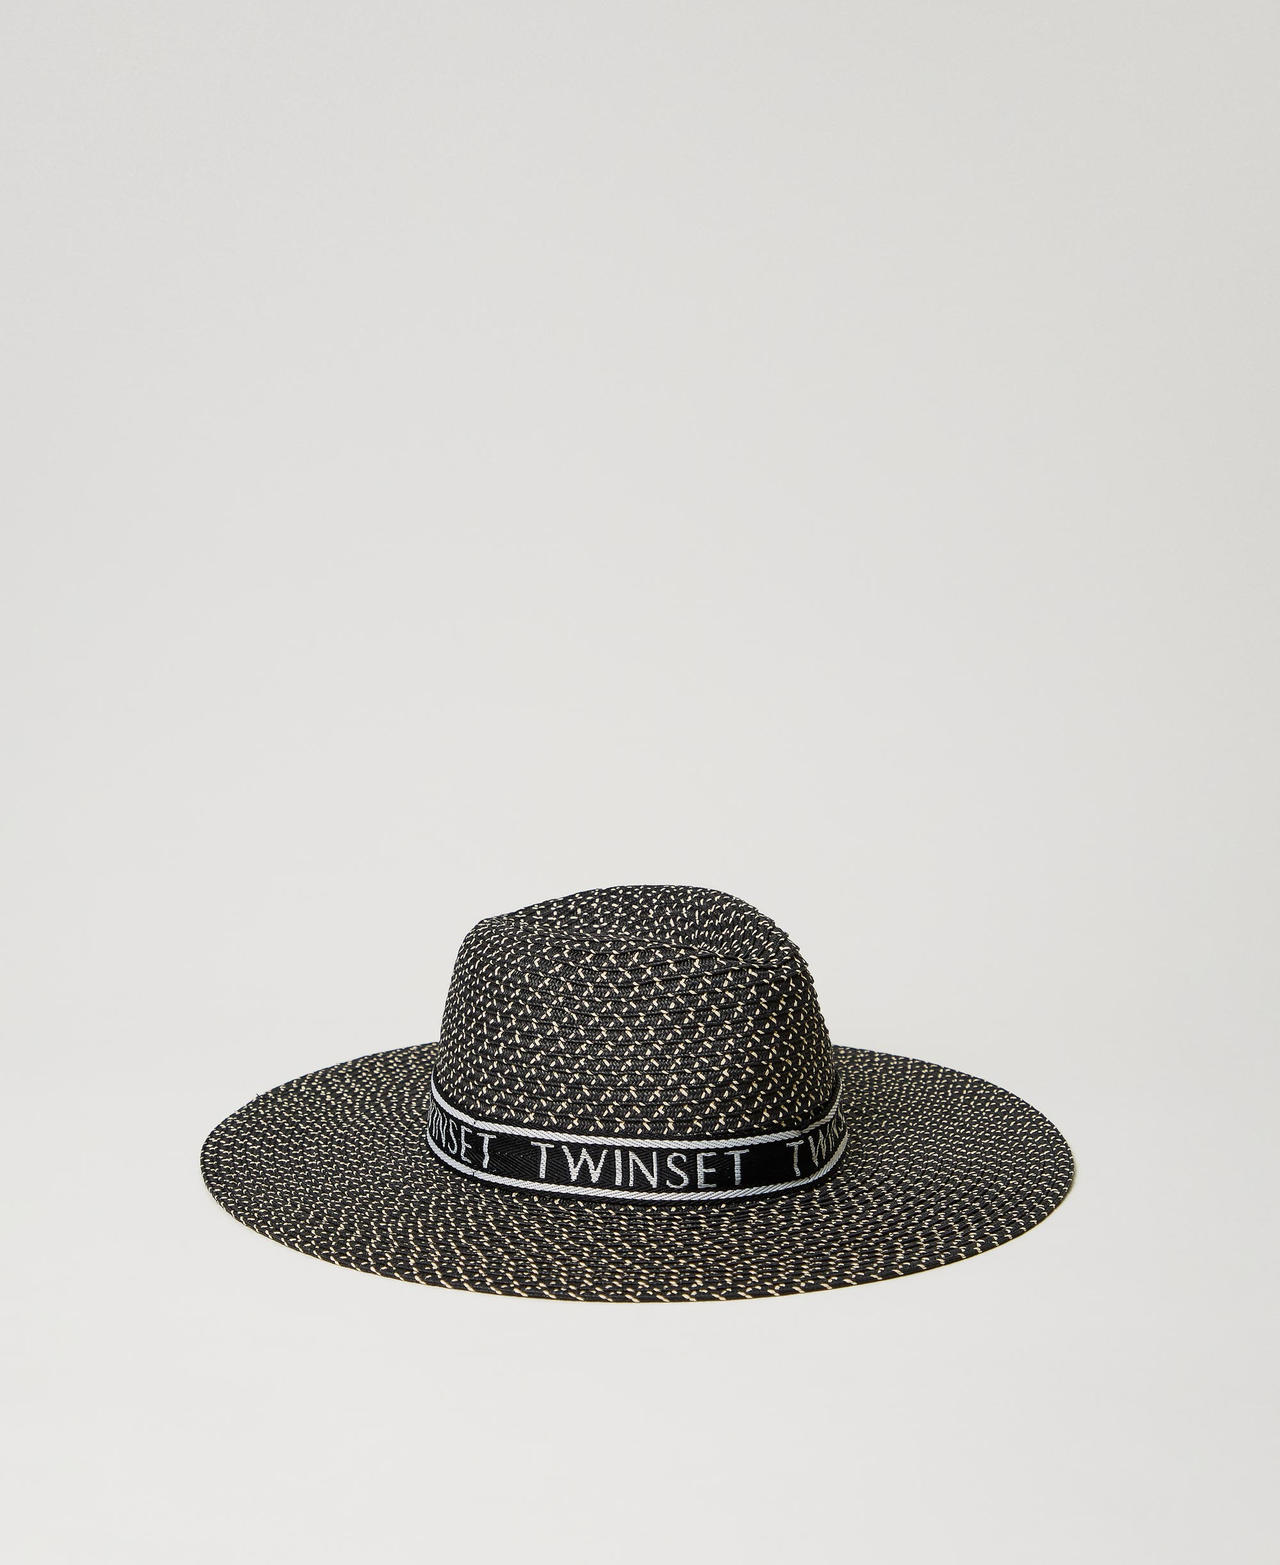 twinset accessori - cappello a tesa larga con logo, nero, taglia unica donna